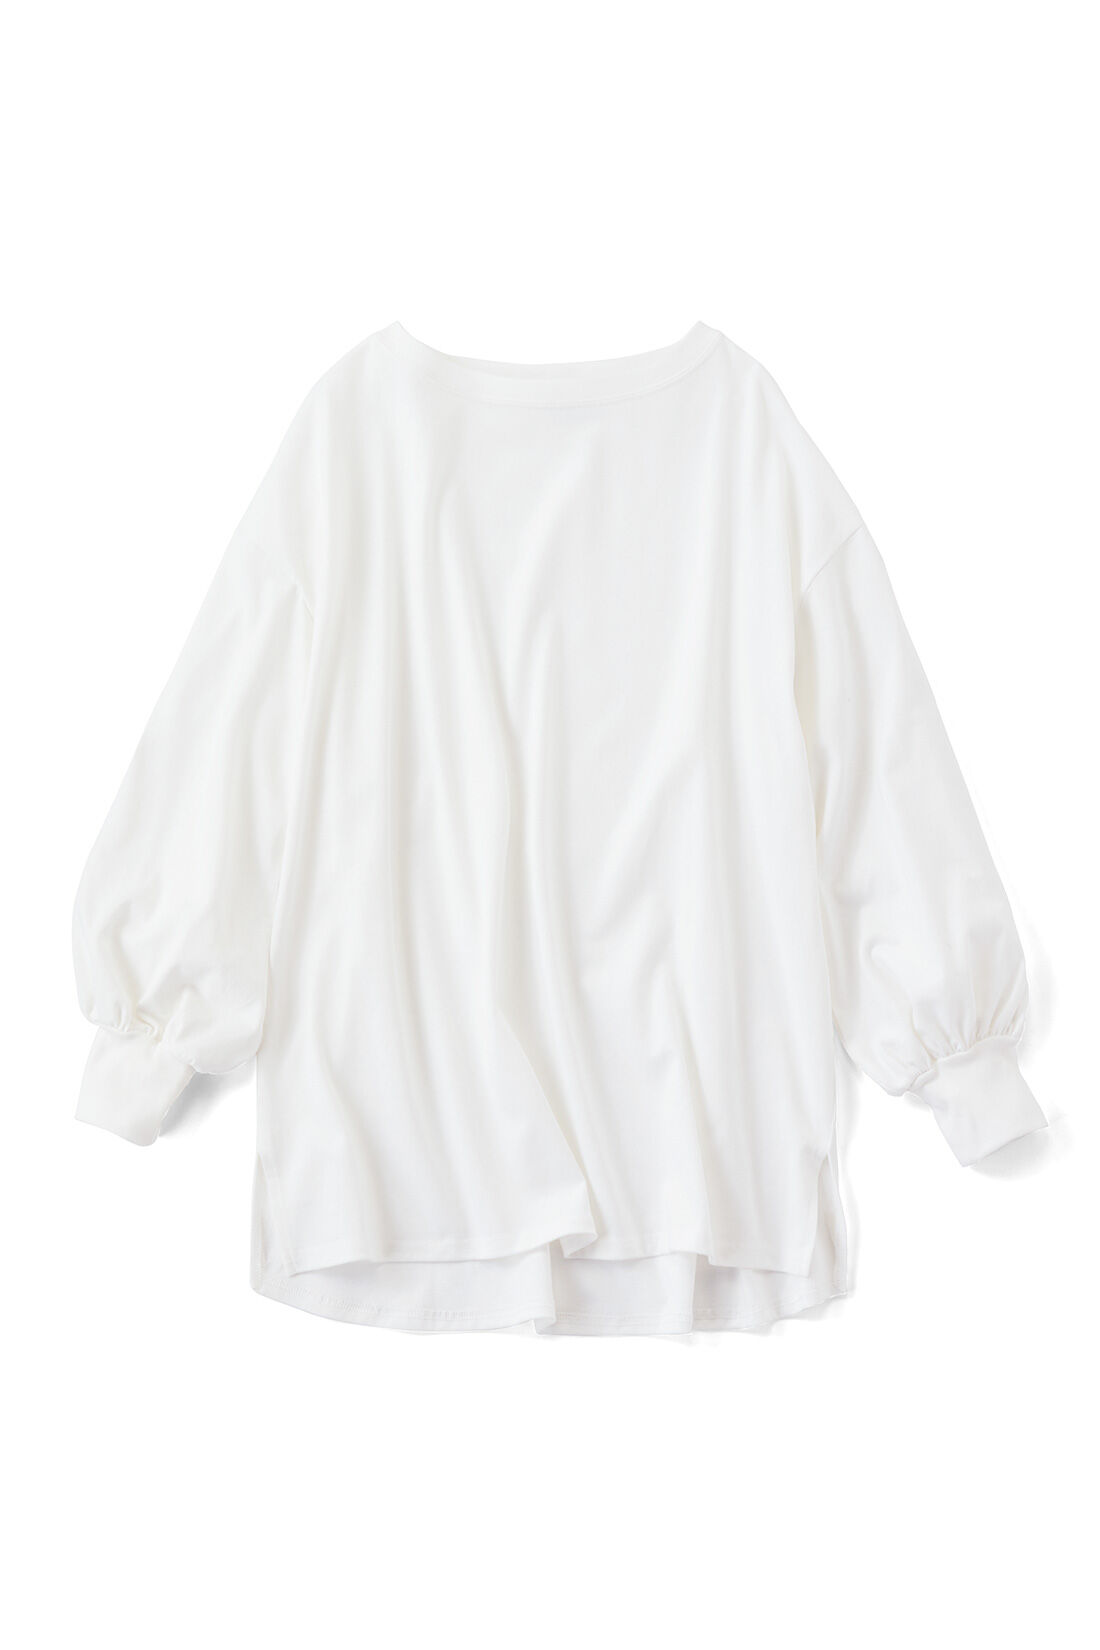 IEDIT|IEDIT[イディット]　福田麻琴さんコラボ 大人が一枚で着こなしやすいロングTシャツ〈オフホワイト〉